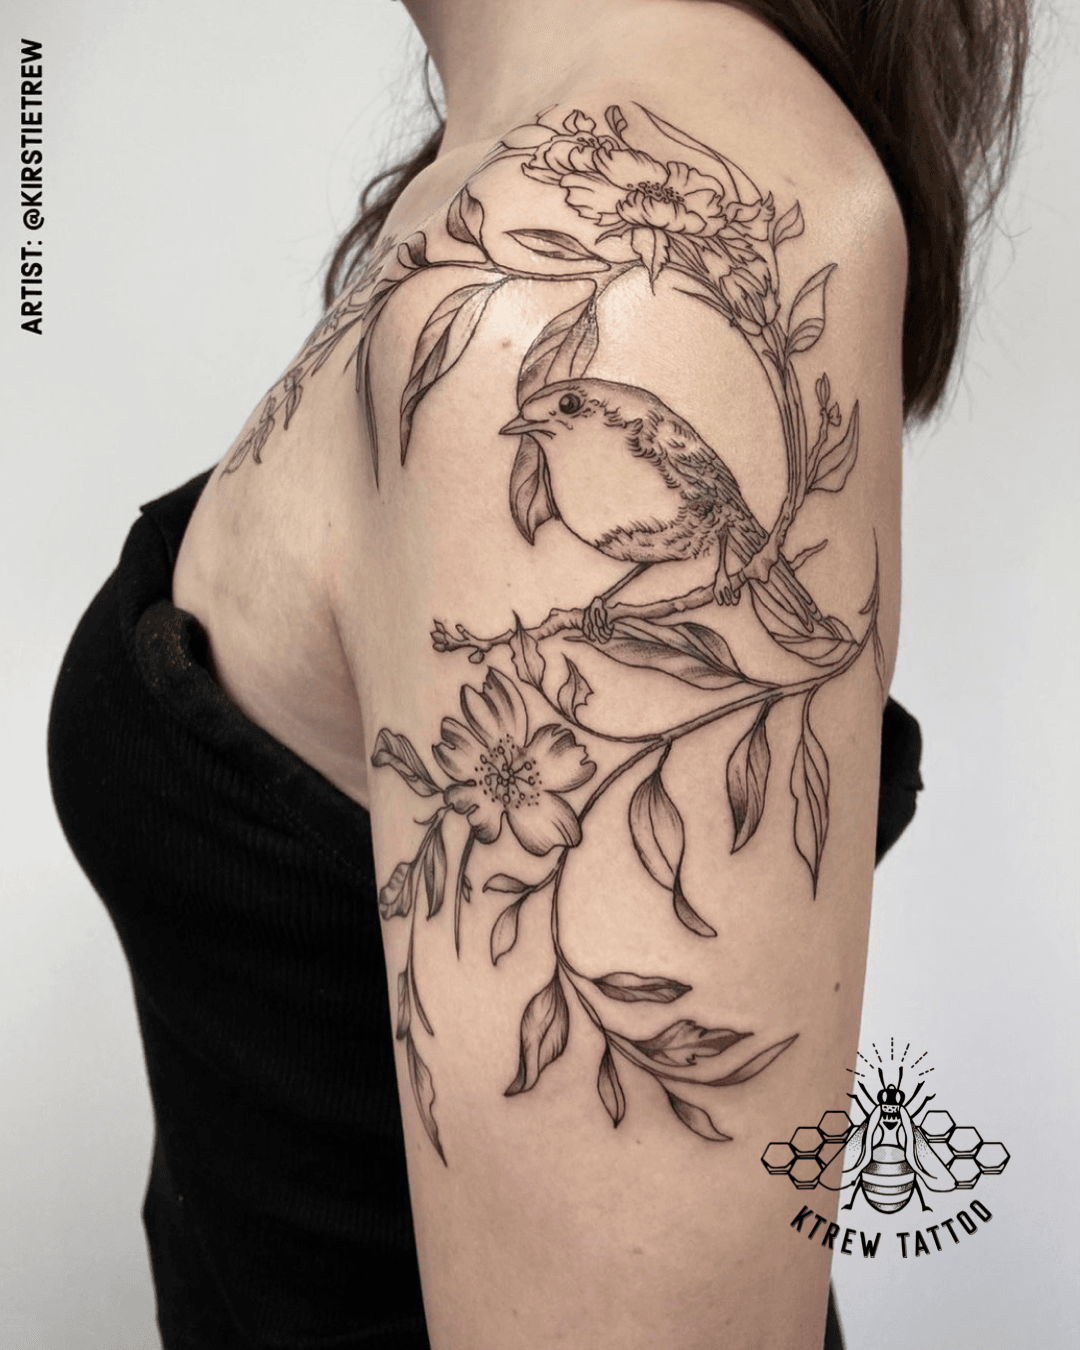 Bird tat | Shoulder tattoos for women, Bird tattoos for women, Bird  shoulder tattoos